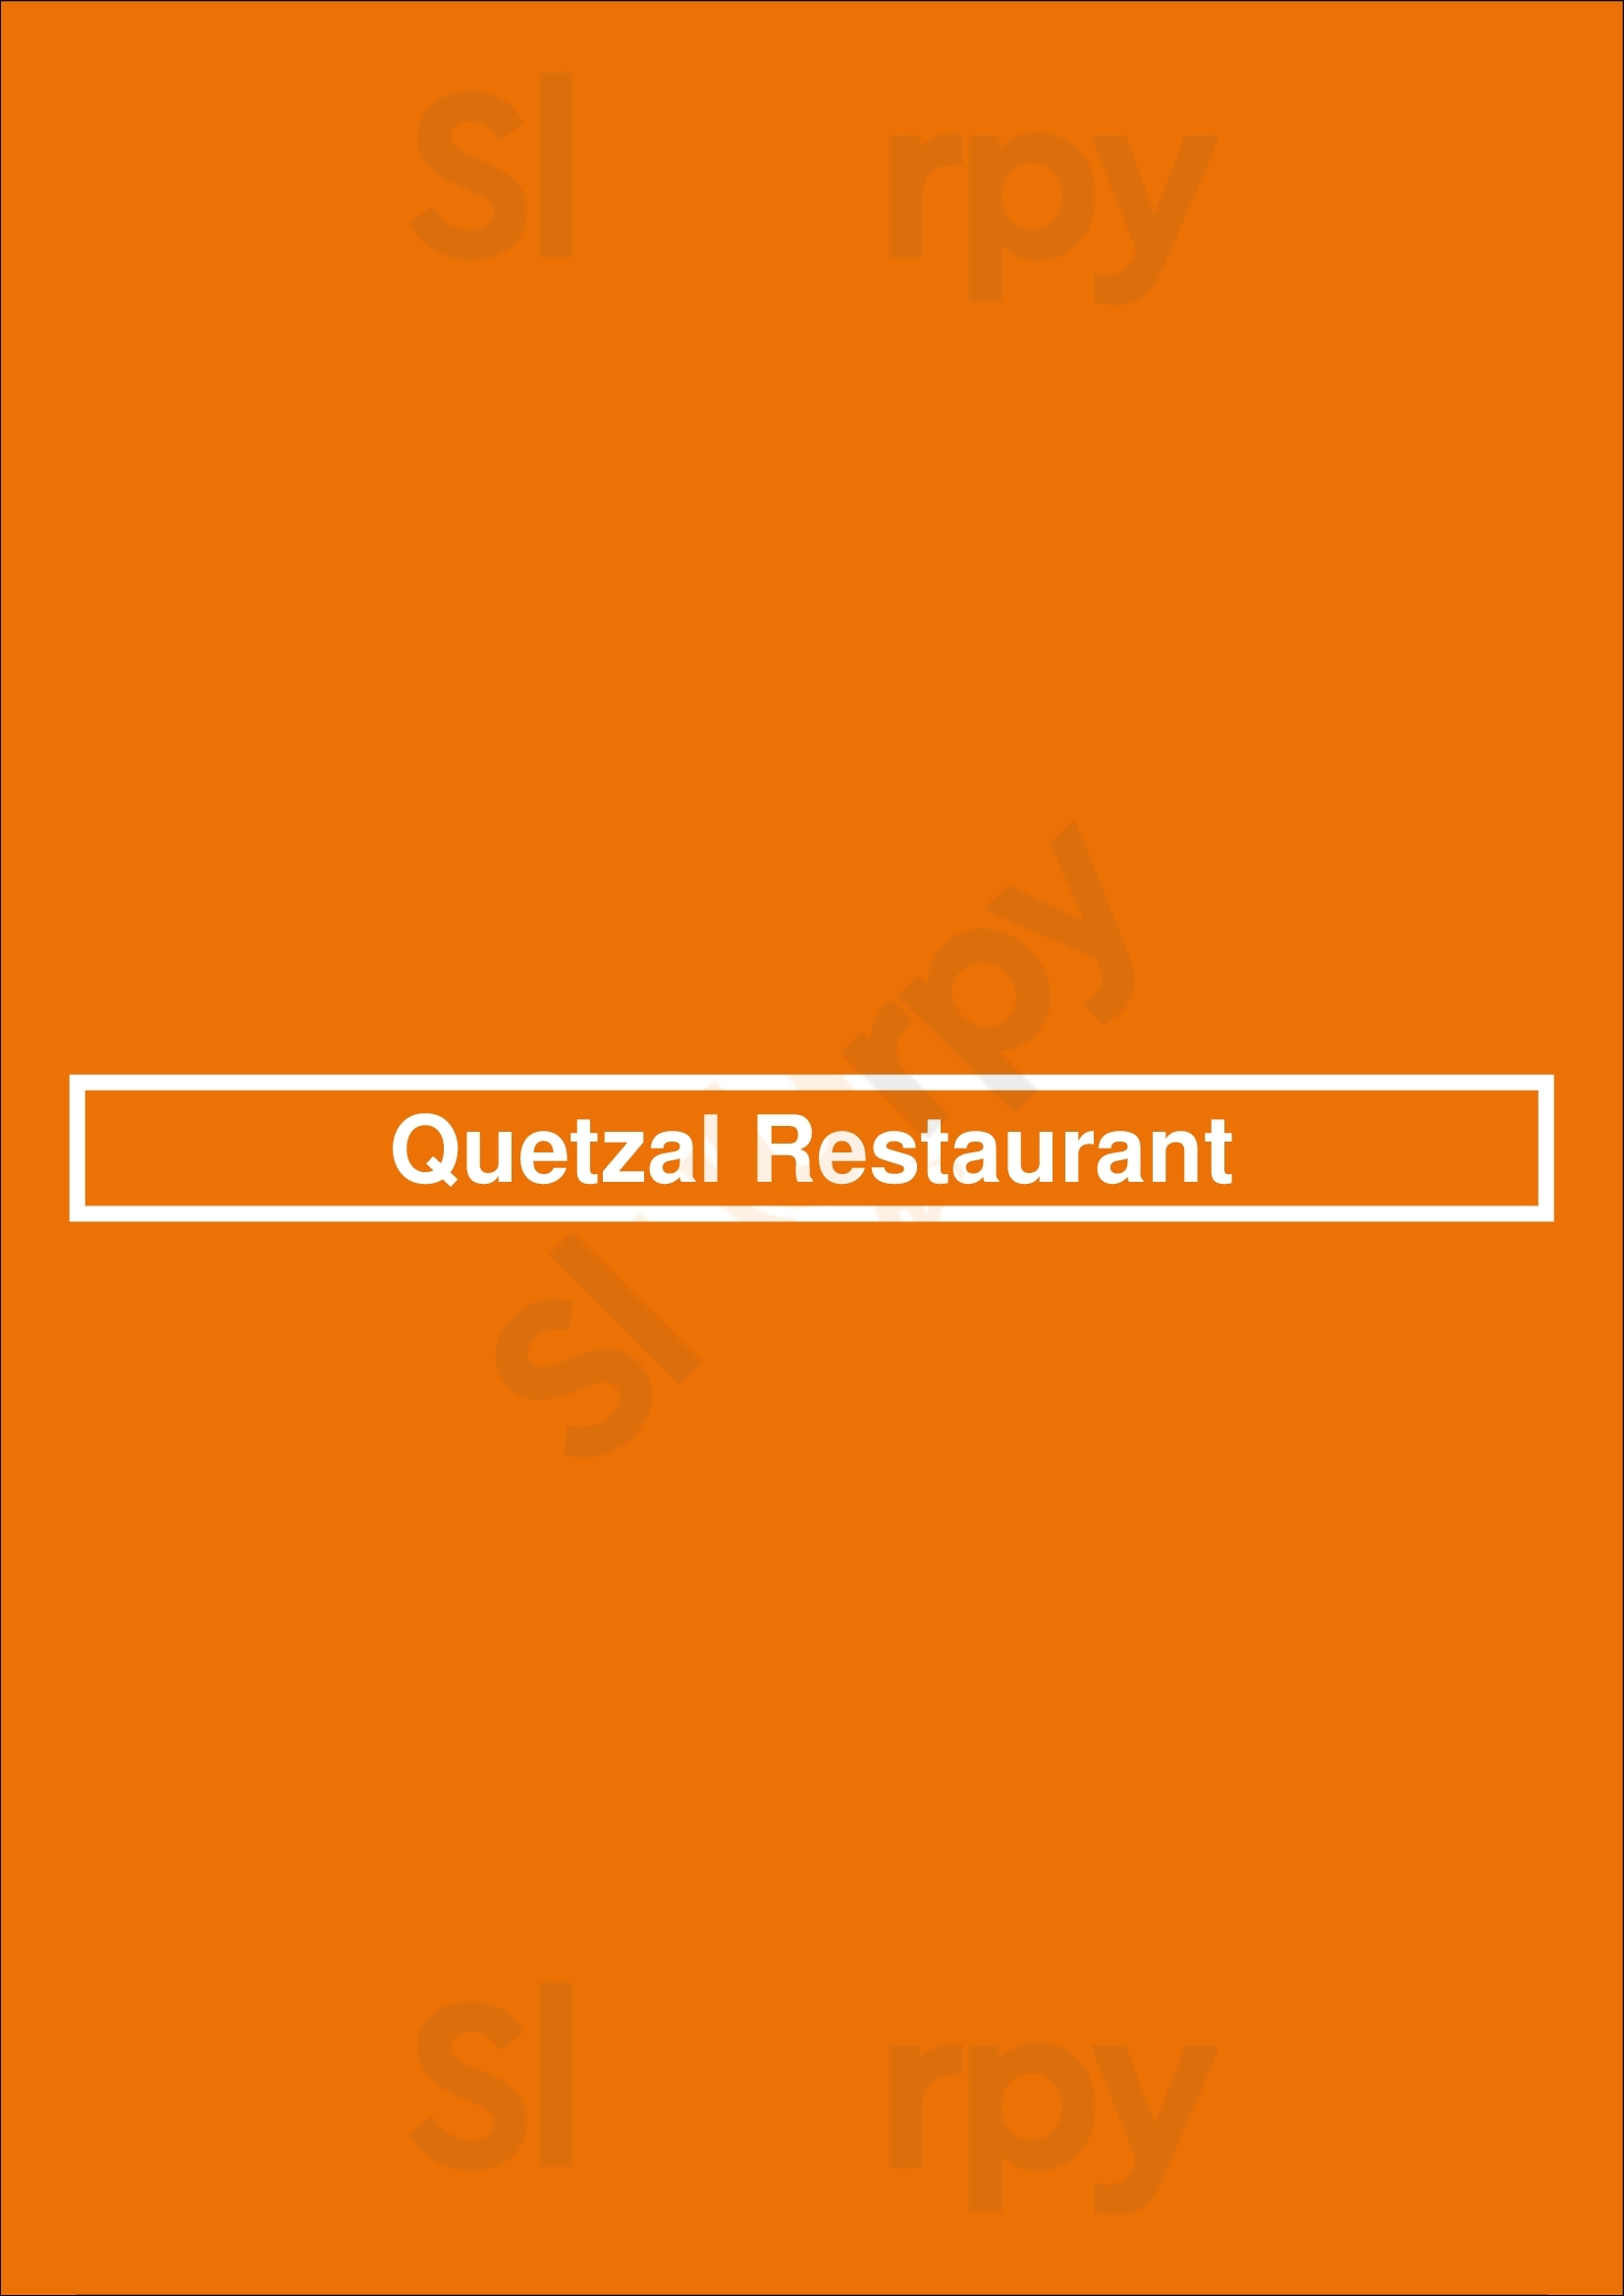 Quetzal Restaurant Brooklyn Menu - 1